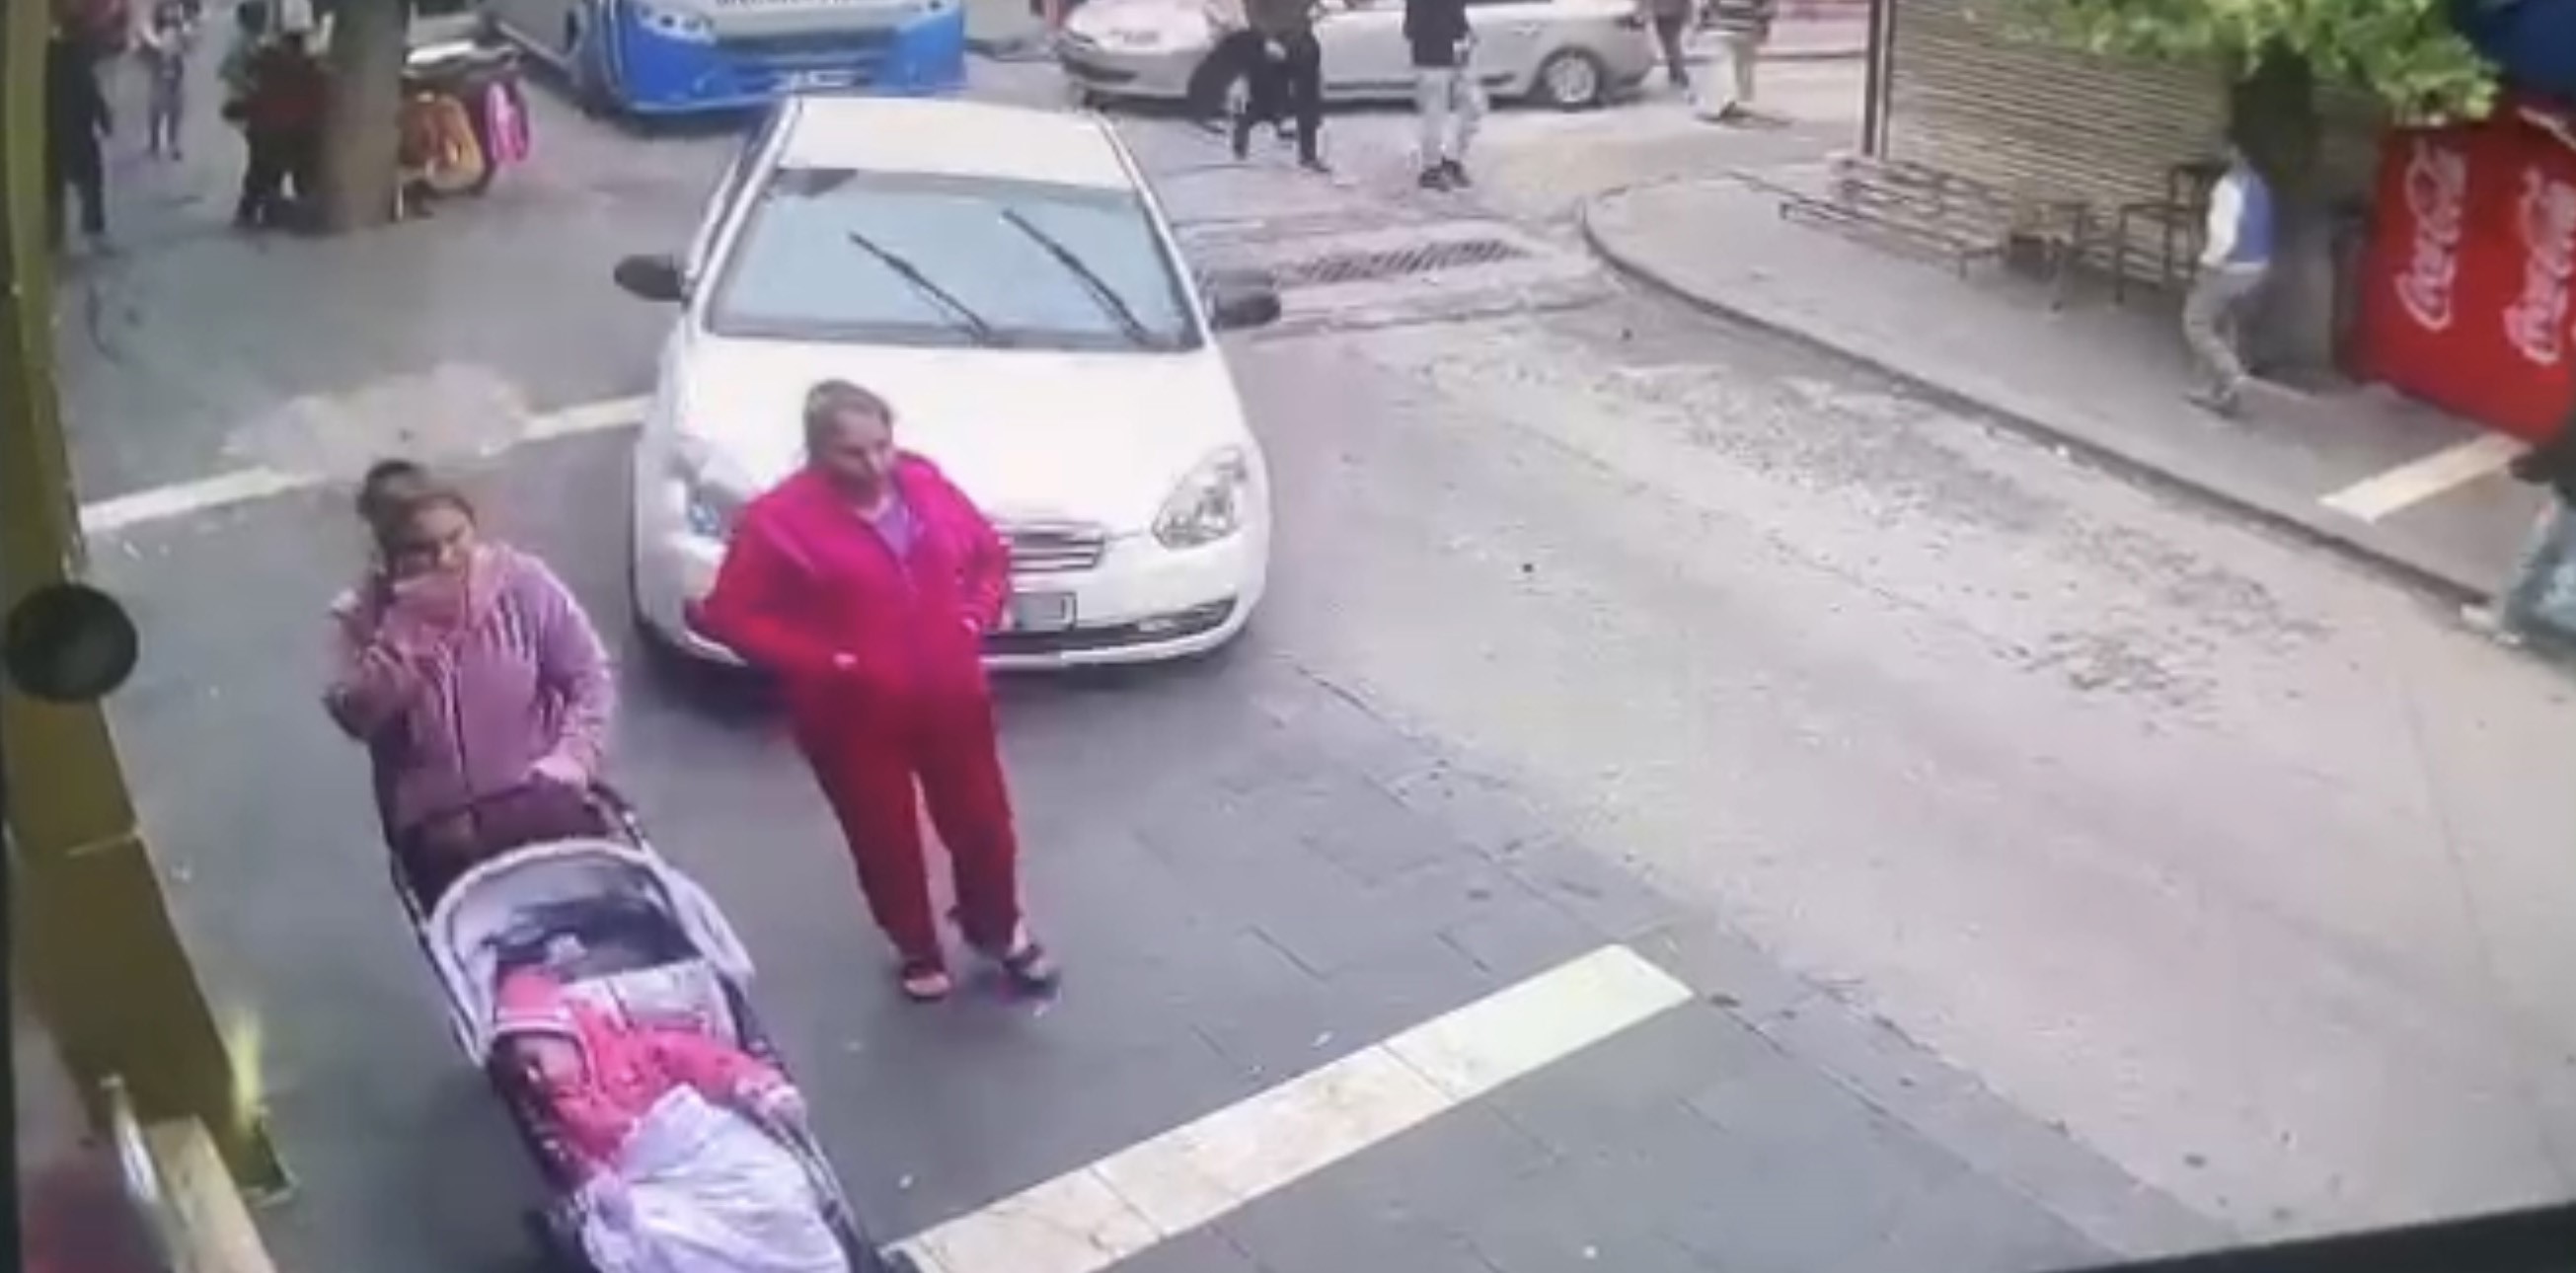 Gaziantep’te kaldırımda yürüyen 2 kadın ile bebeğe araba çarptı